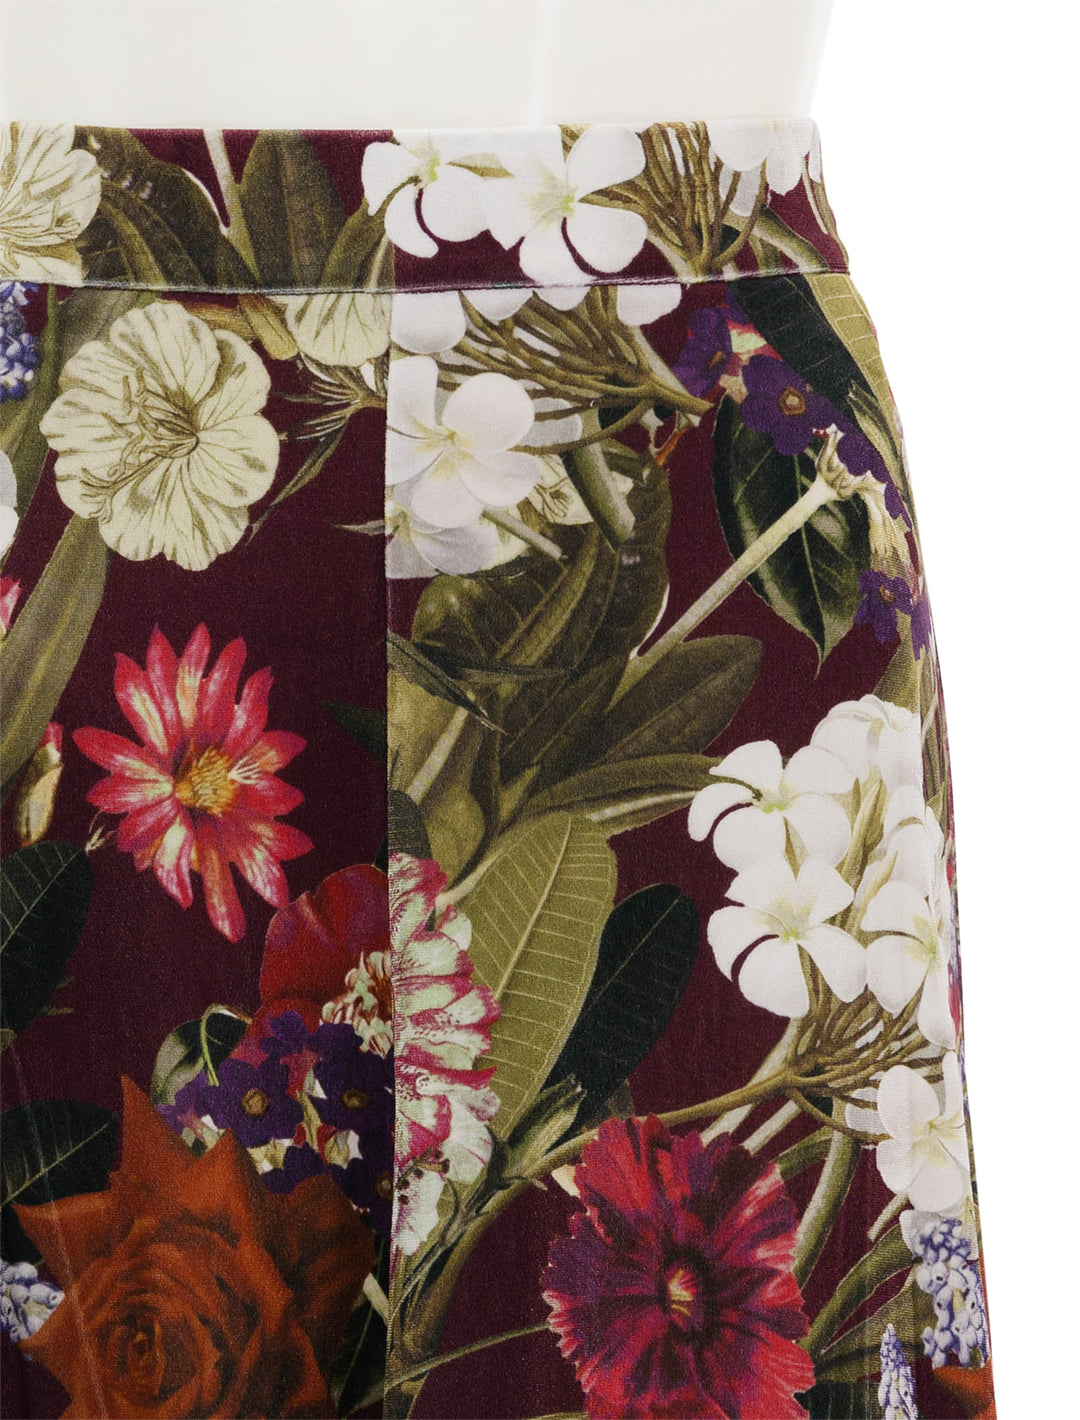 Close-up view of Cara Cara's gianna skirt in garden flora.